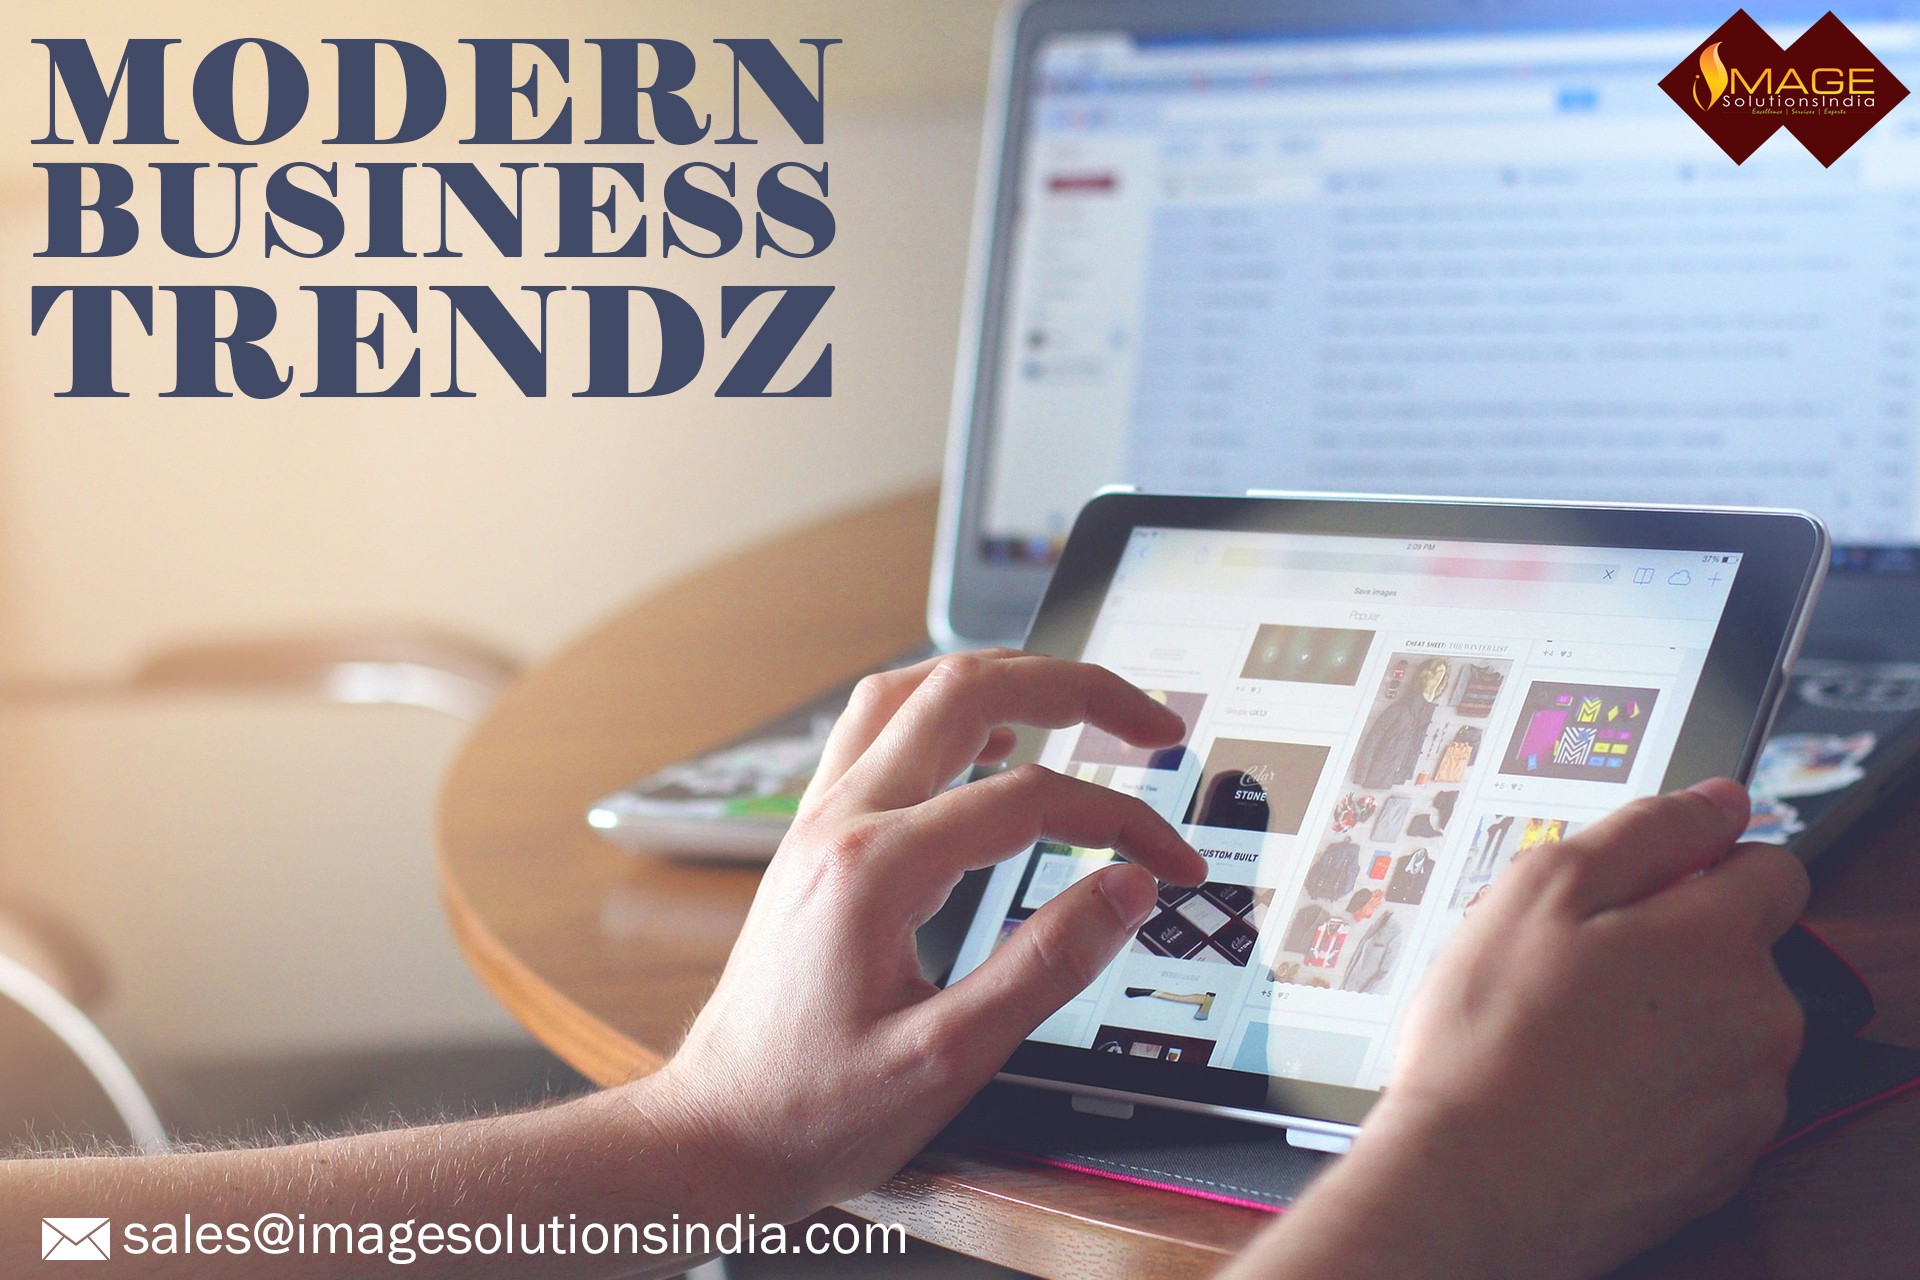 Modern Business Trends 2015